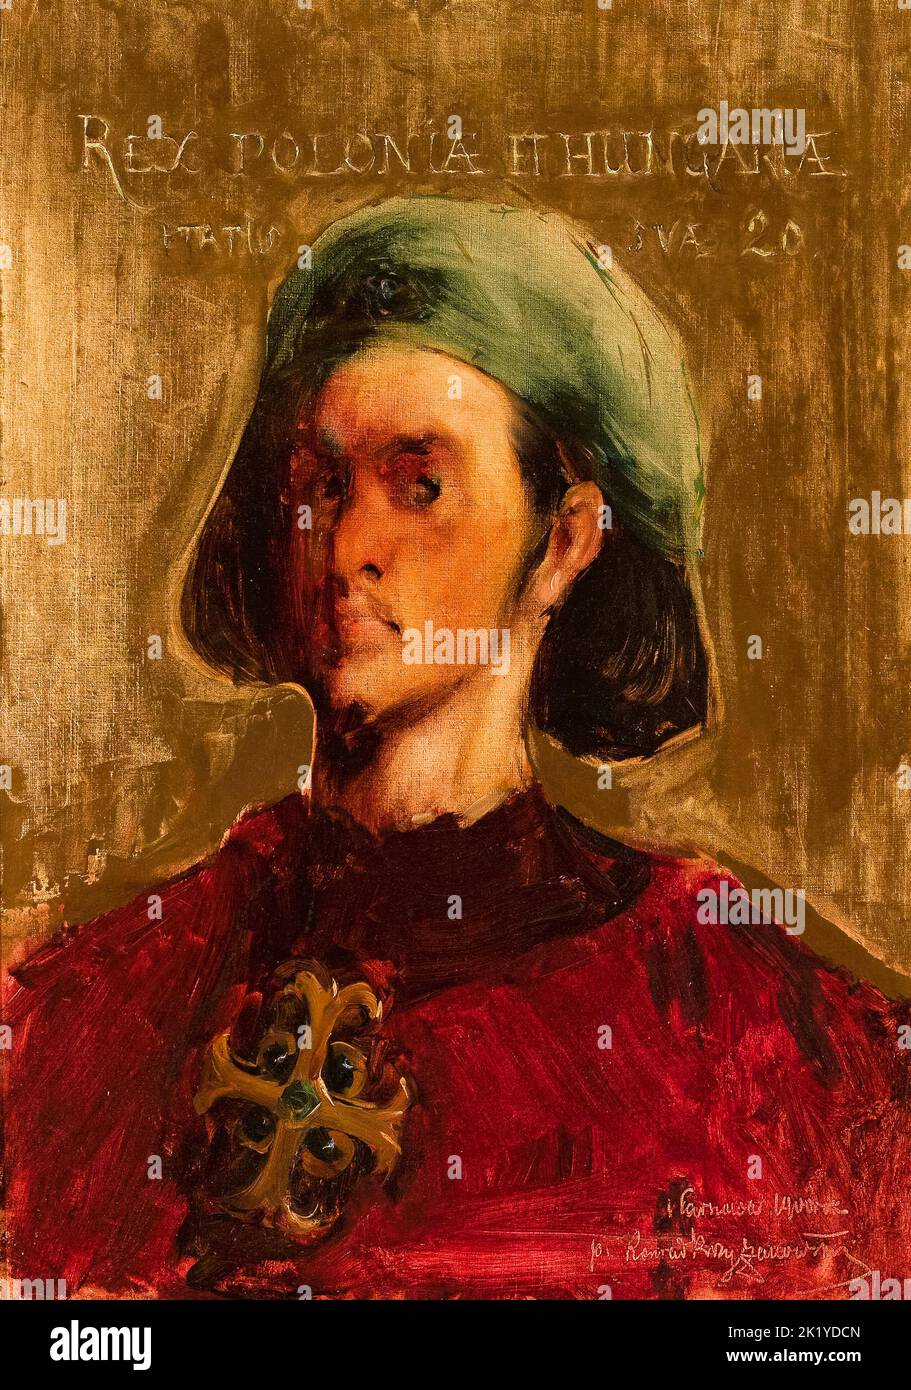 Władysław III (1424-1444), alias Ladislao de Varna, rey de Polonia (1434-1444), retrato al óleo sobre lienzo de Konrad Krzyżanowski, 1900 Foto de stock